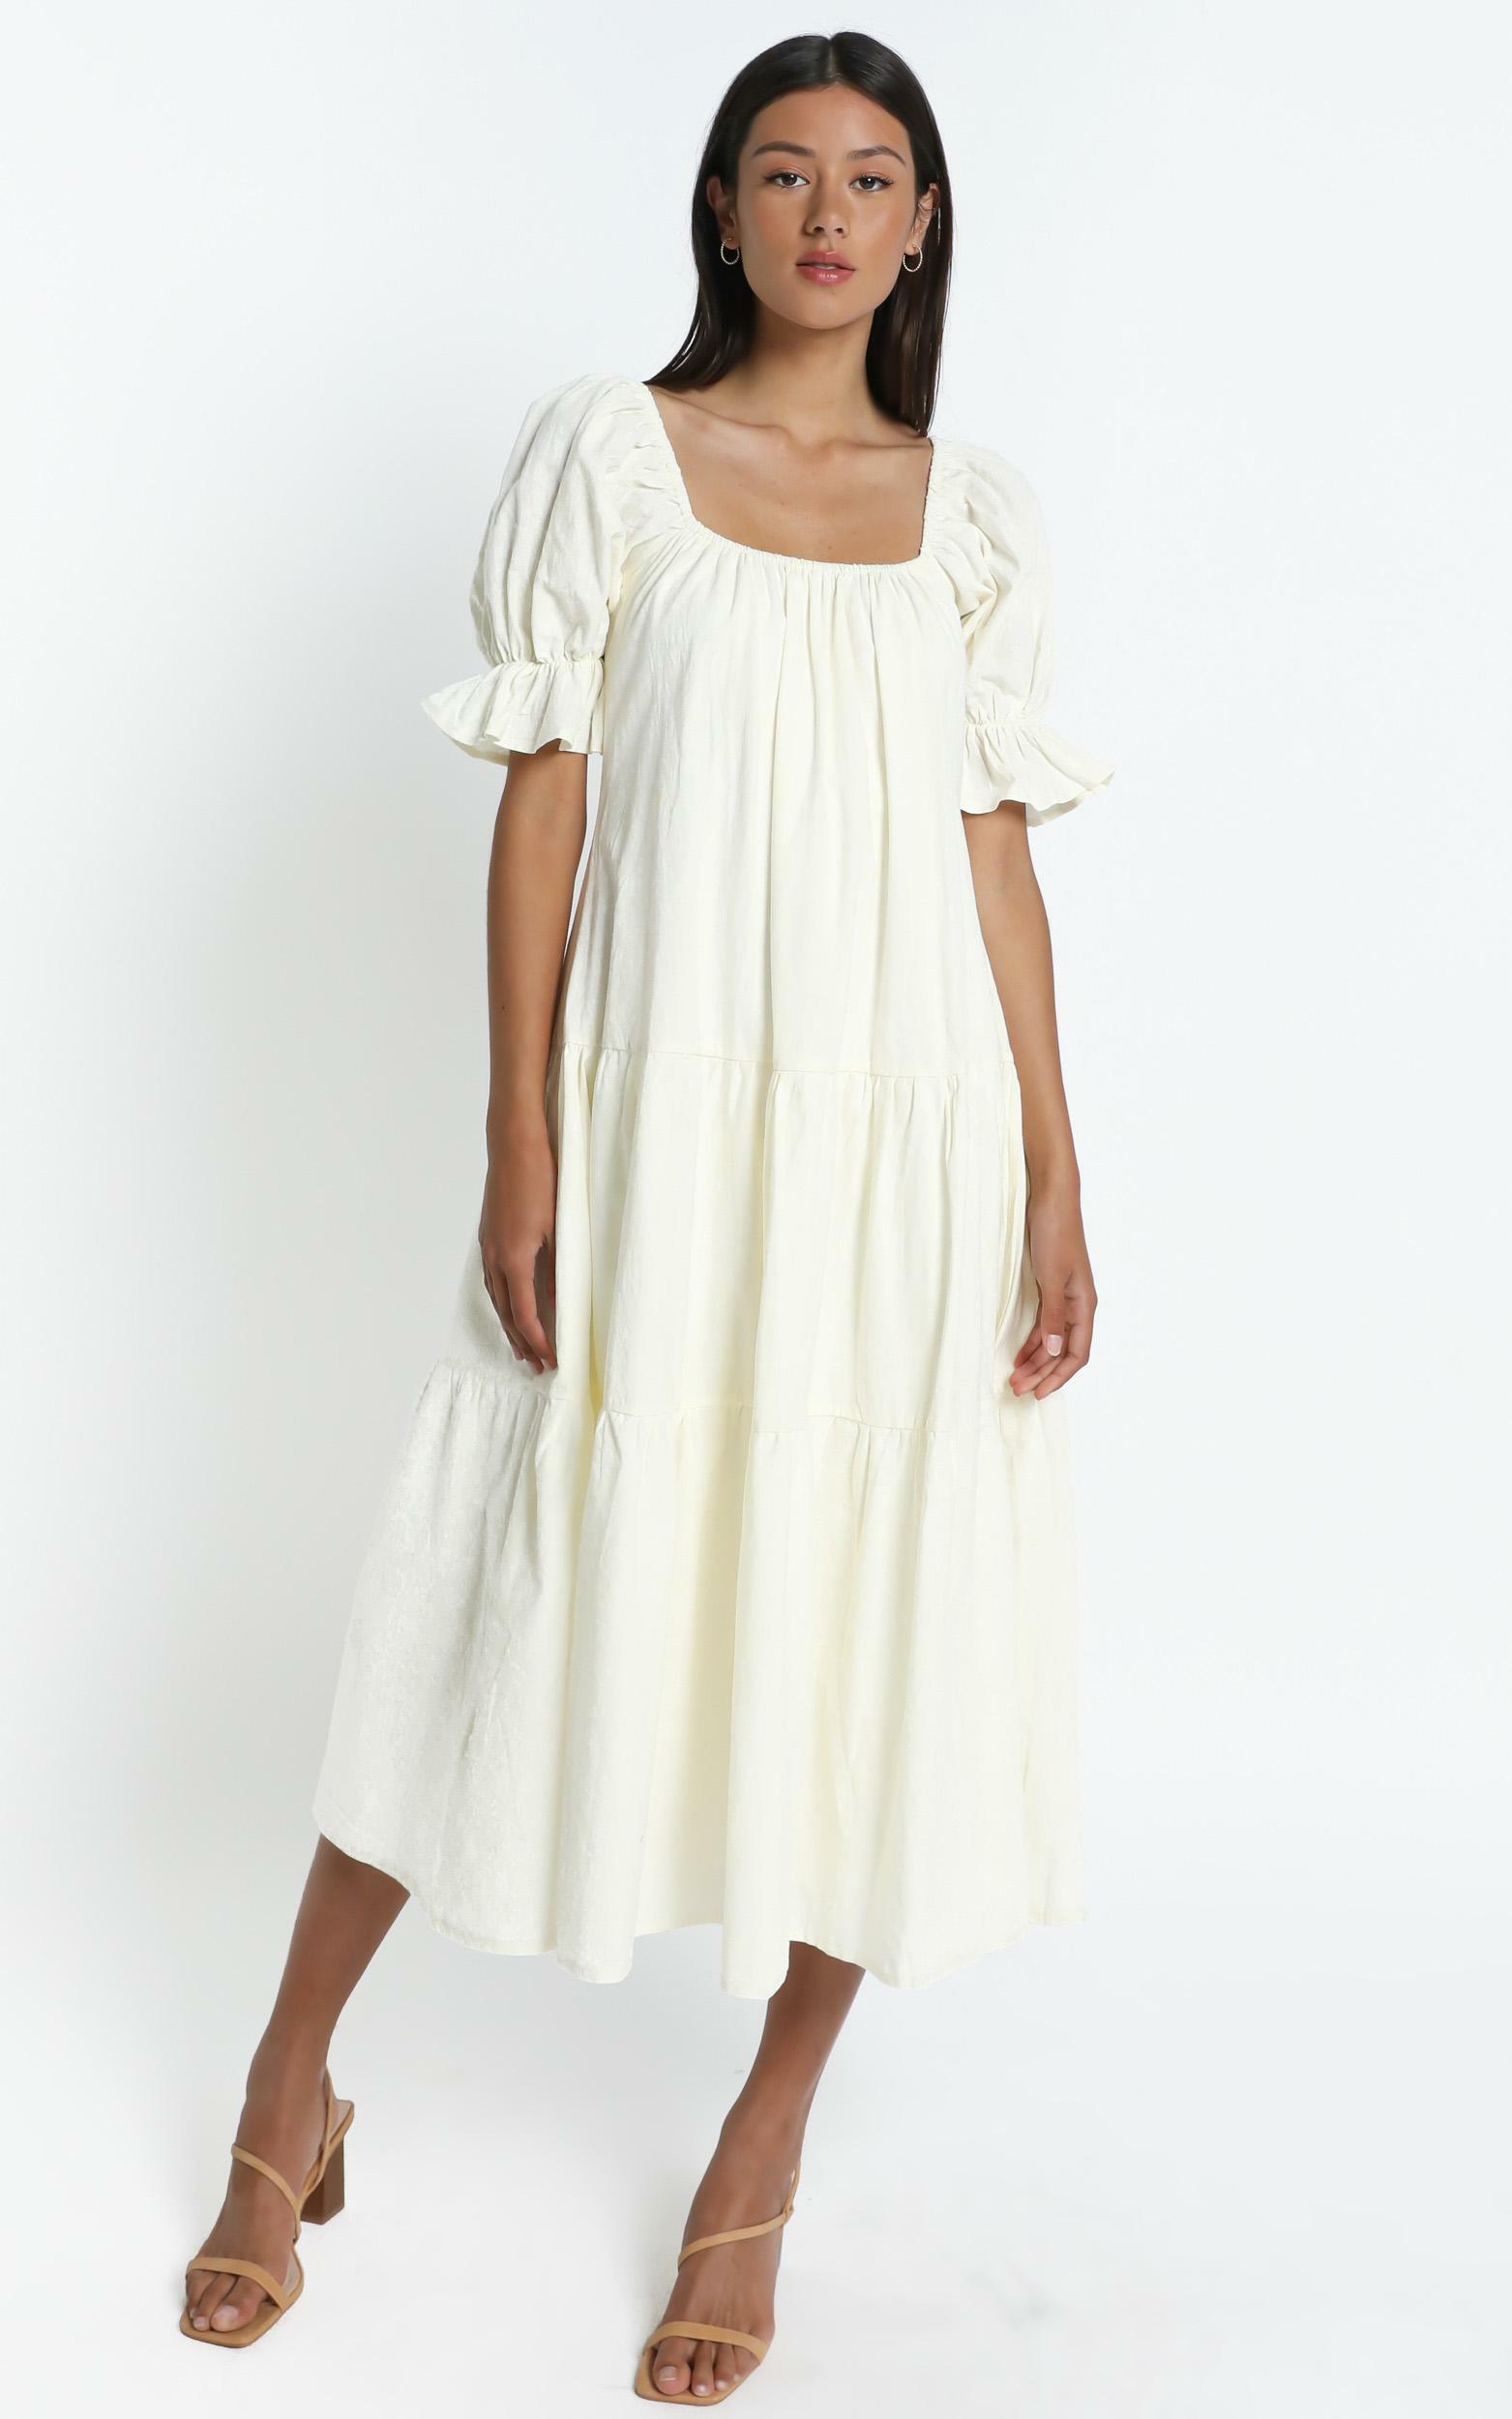 Zaharrah Dress in Cream Linen Look | Showpo